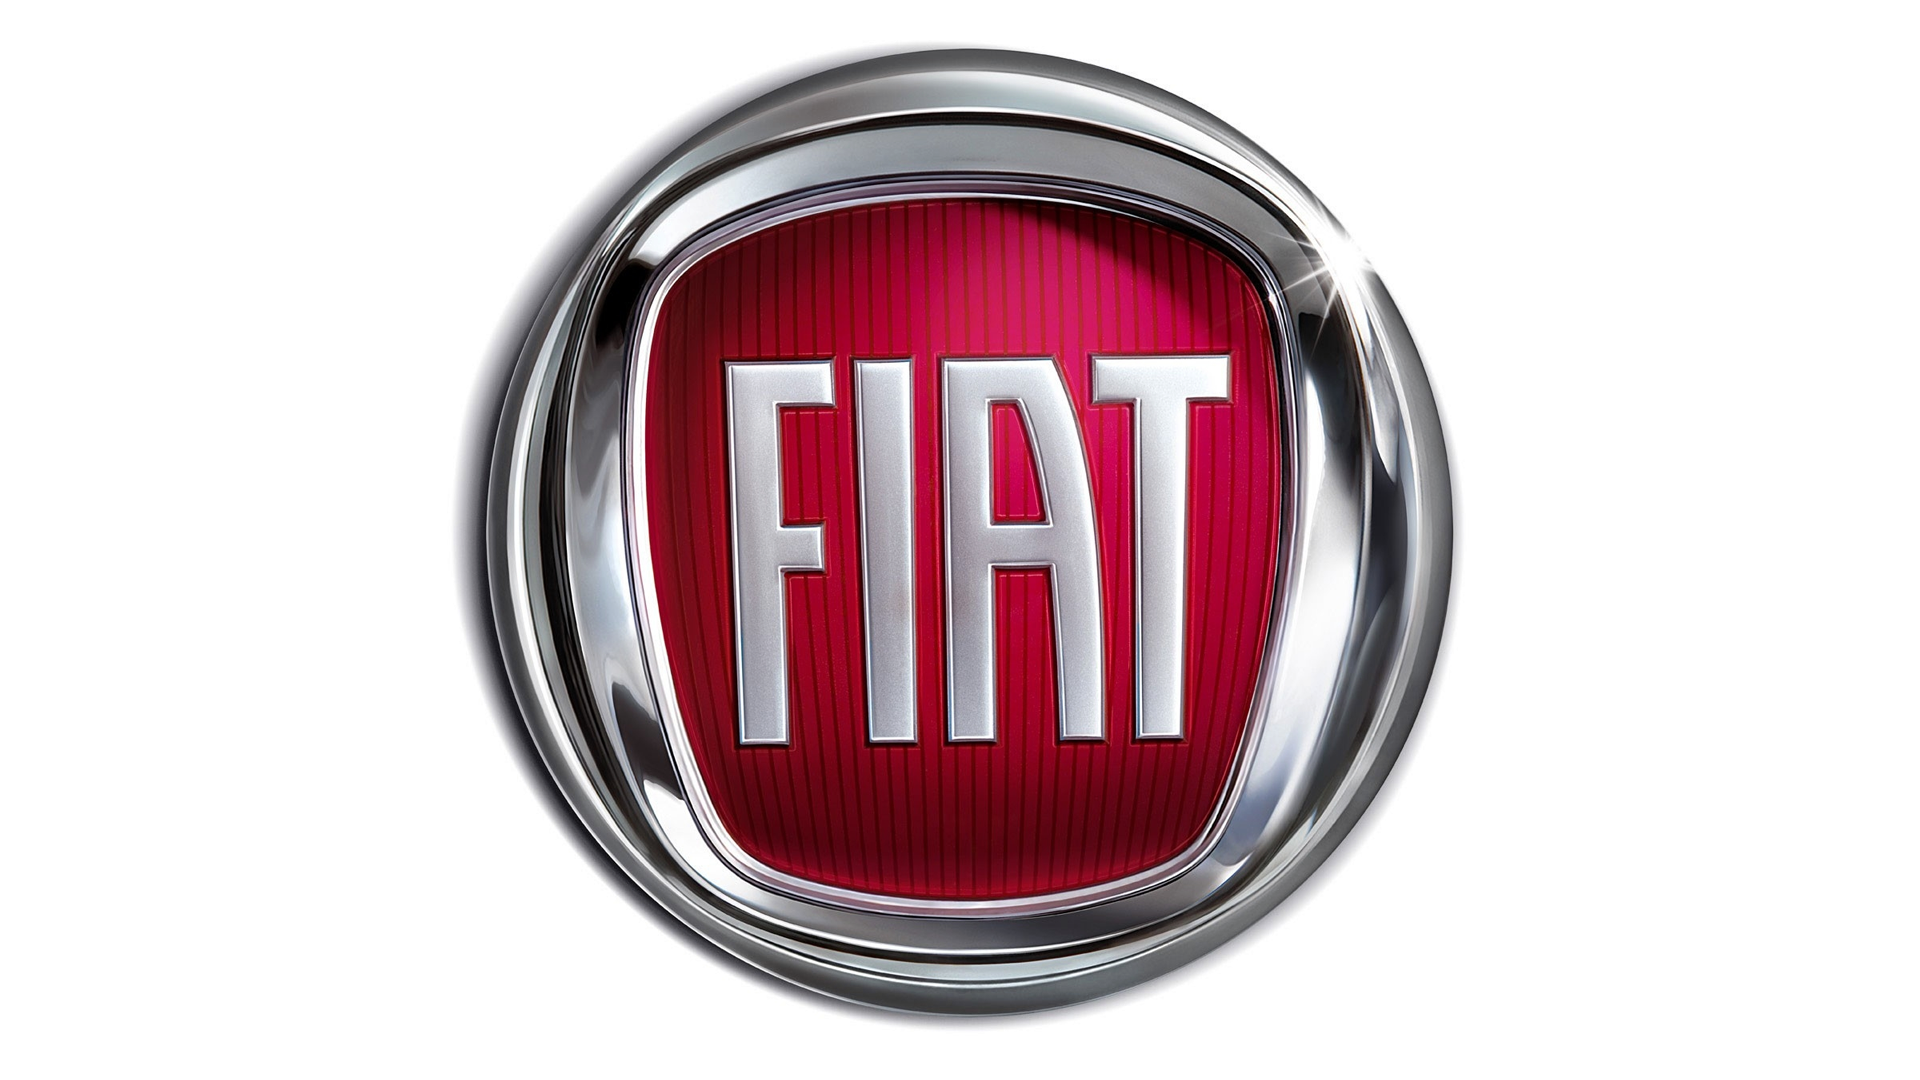 Fiat Uno - Wikipedia